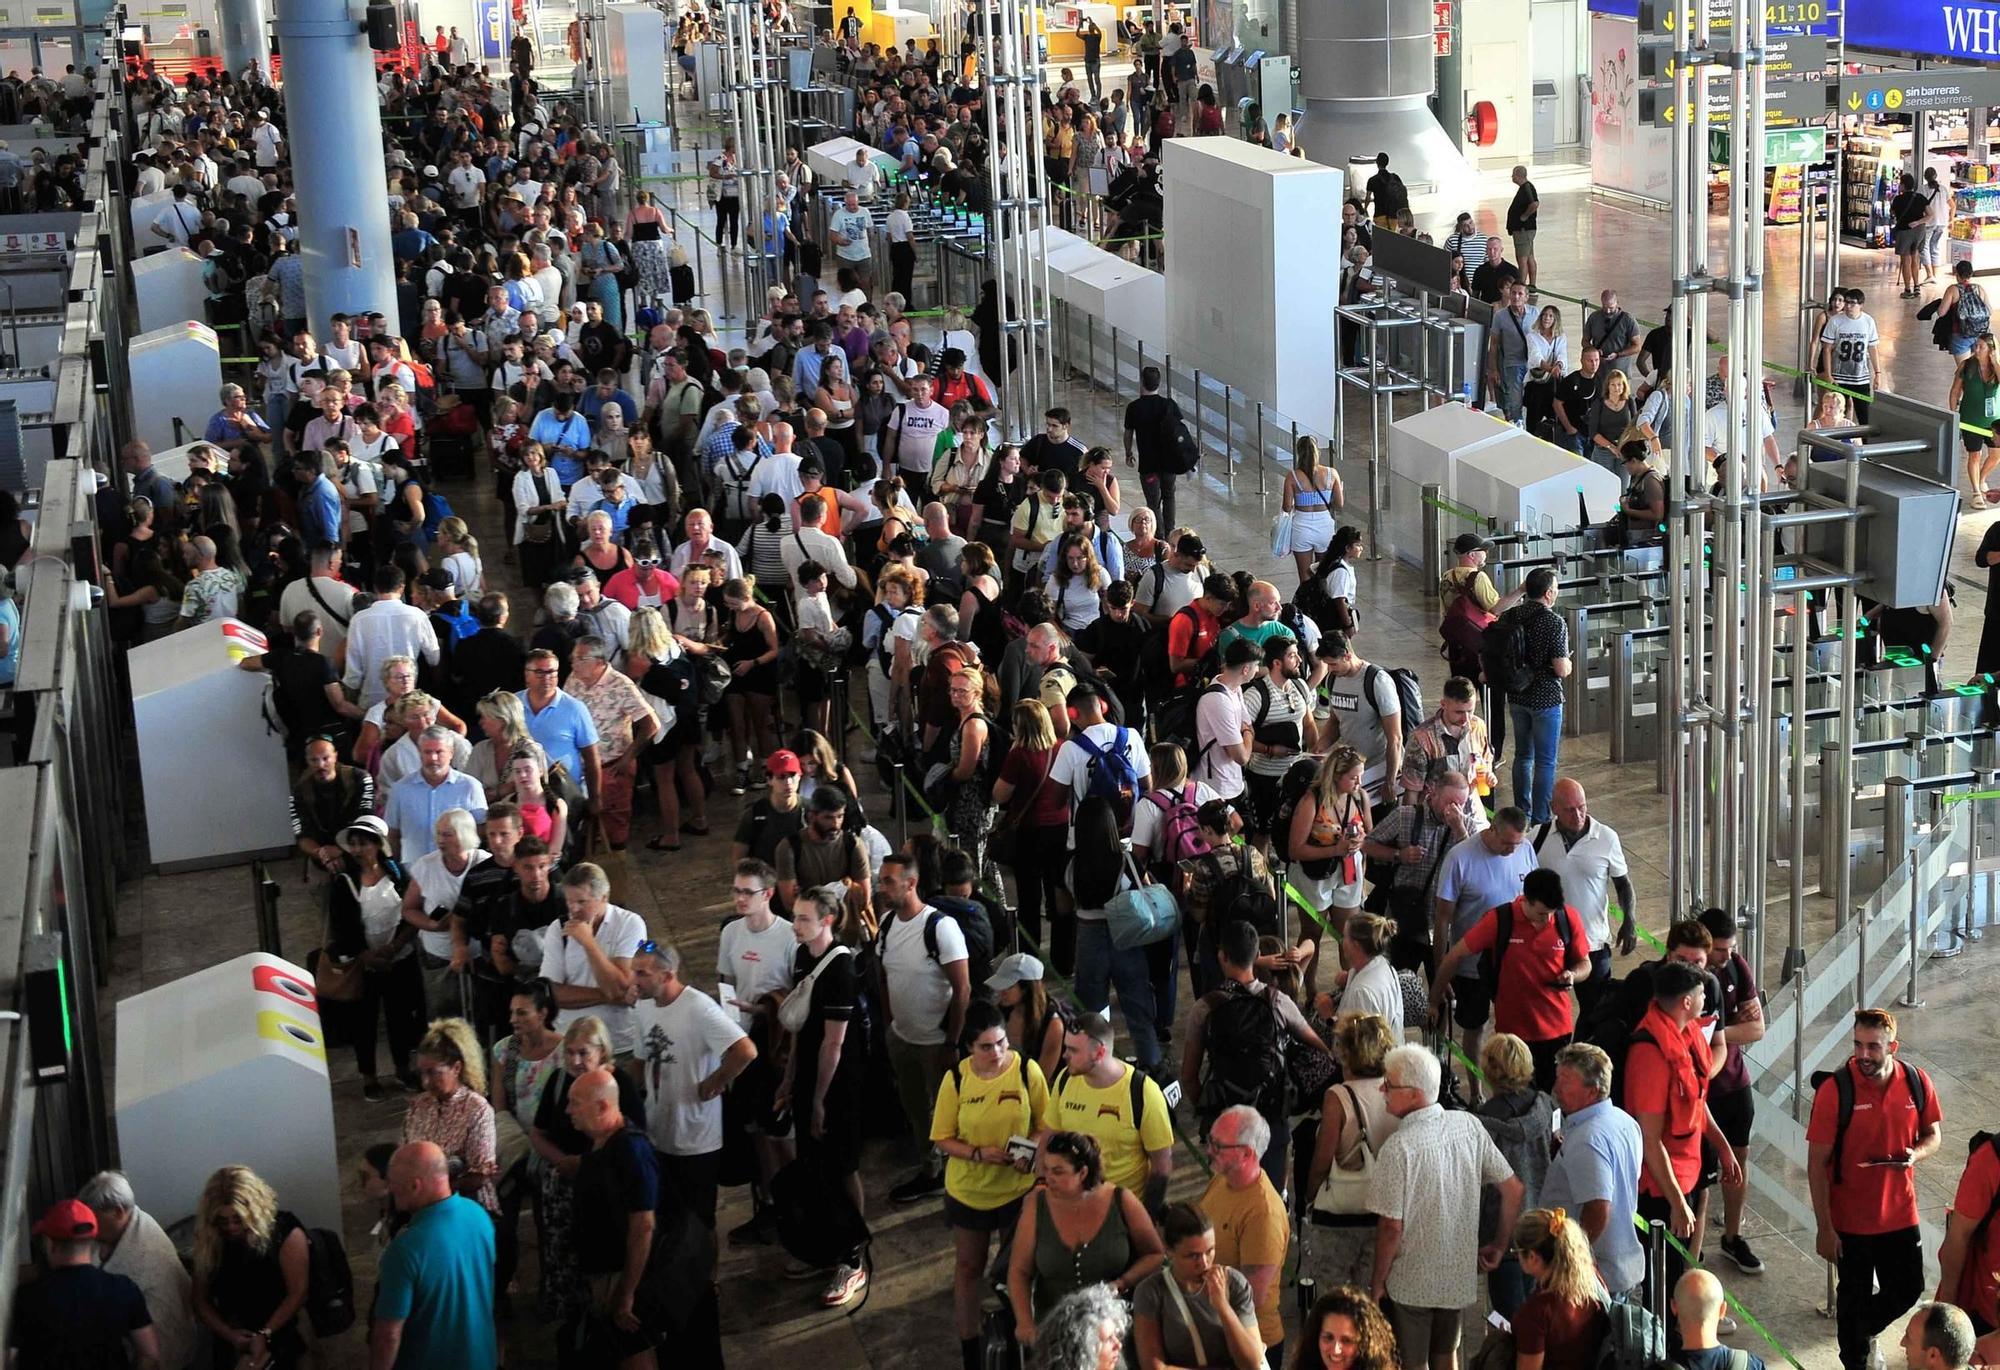 La huelga de los vigilantes de la seguridad del aeropuerto Alicante-Elche colapsa las salidas